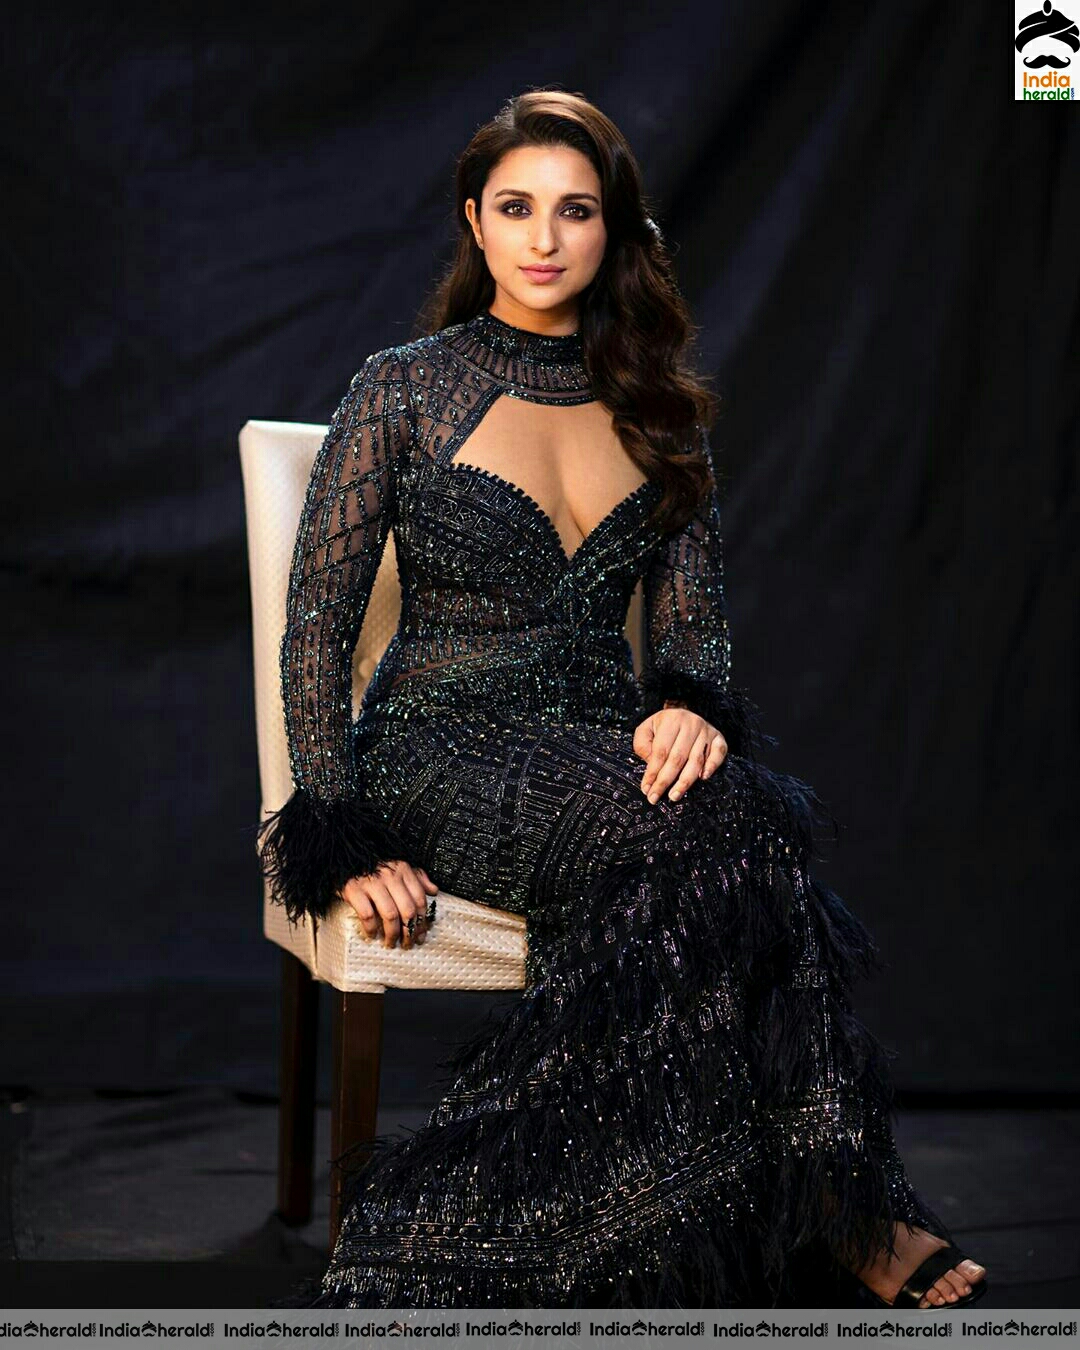 Parineeti chopra Hot Deep Cleavage Show In Black Dress